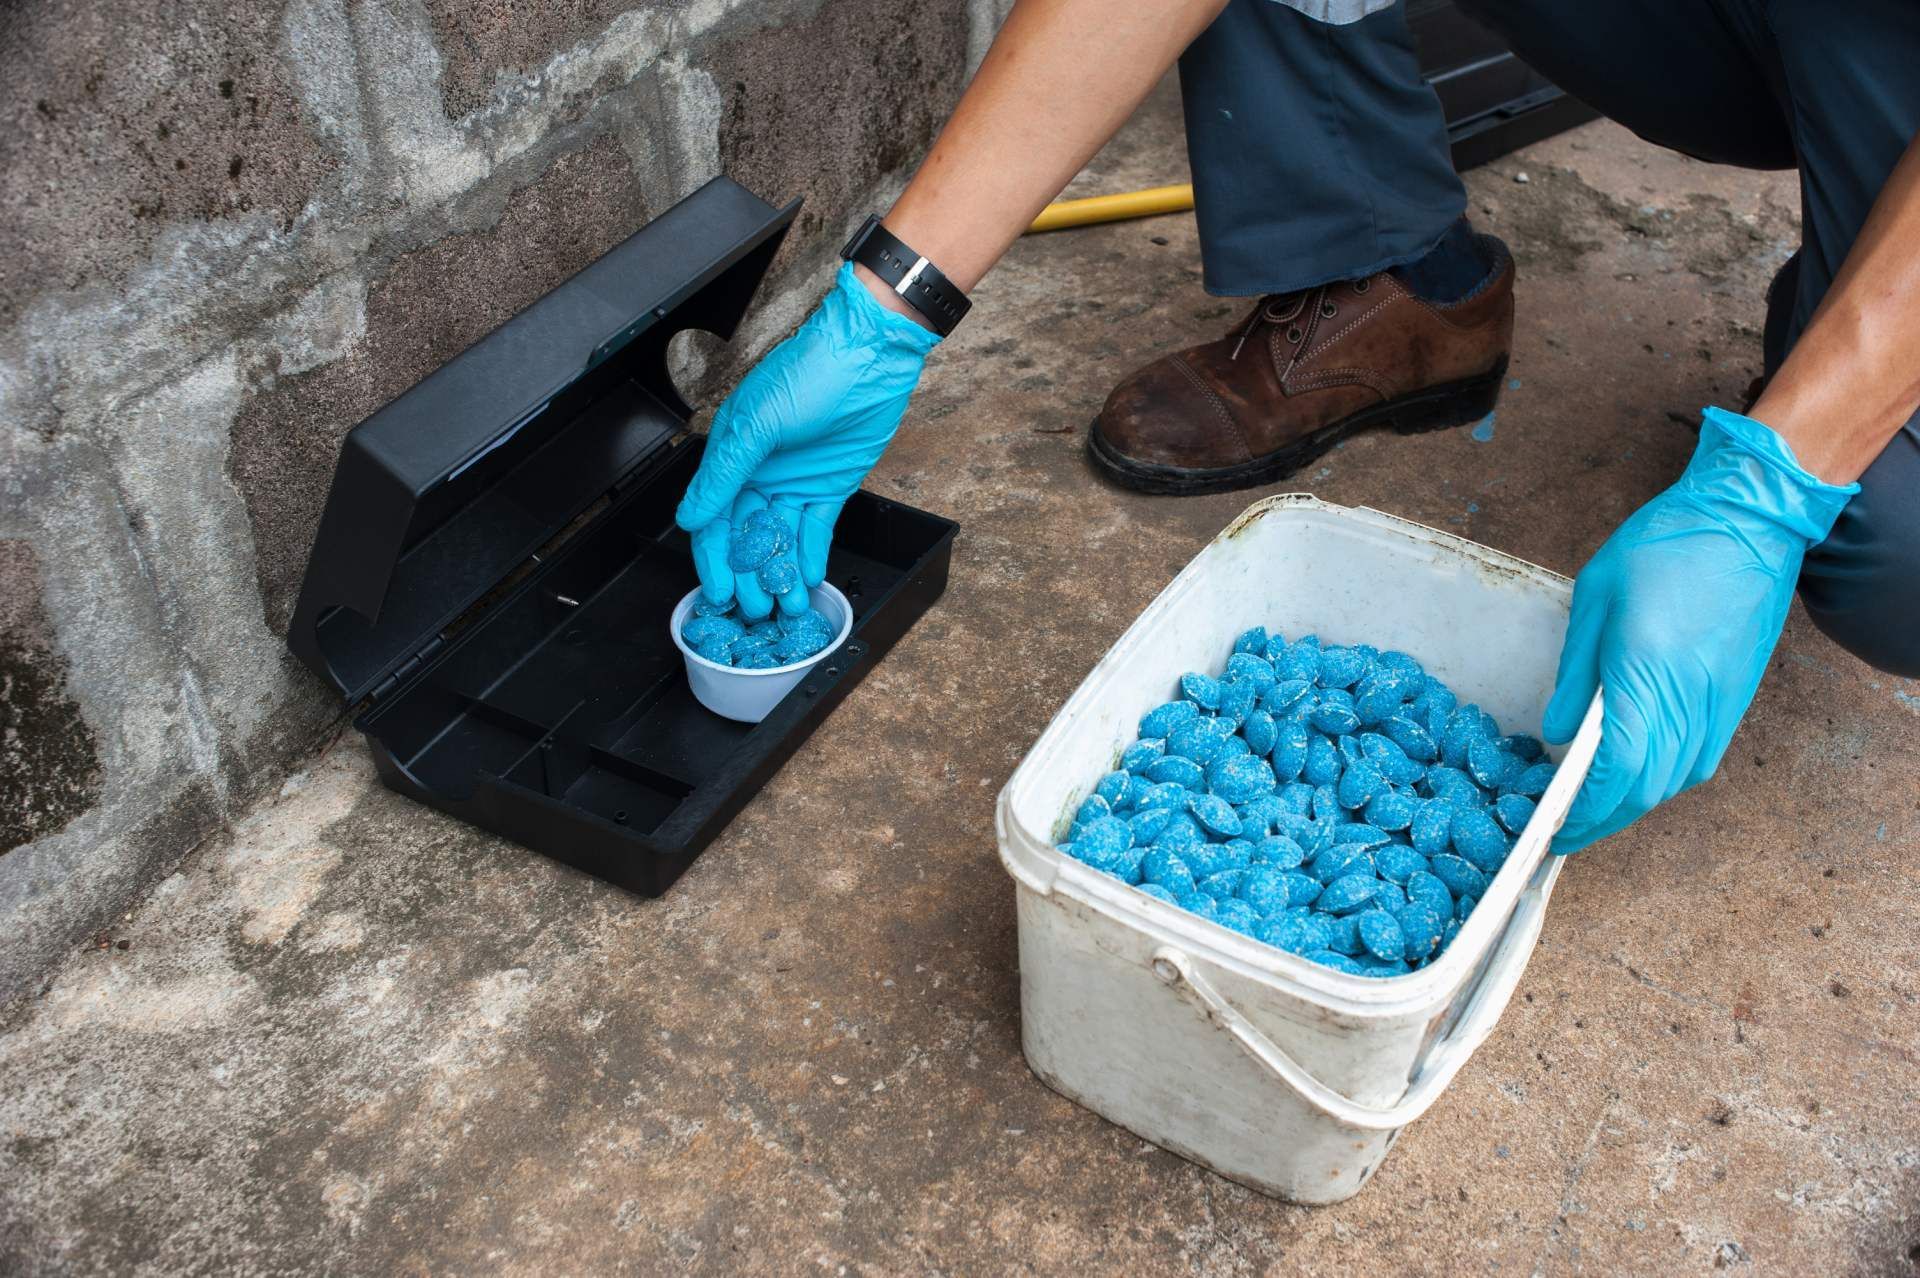 Foto einer Person, die eine Ratten-/Mäusefalle mit einem blauen Giftköder befüllt